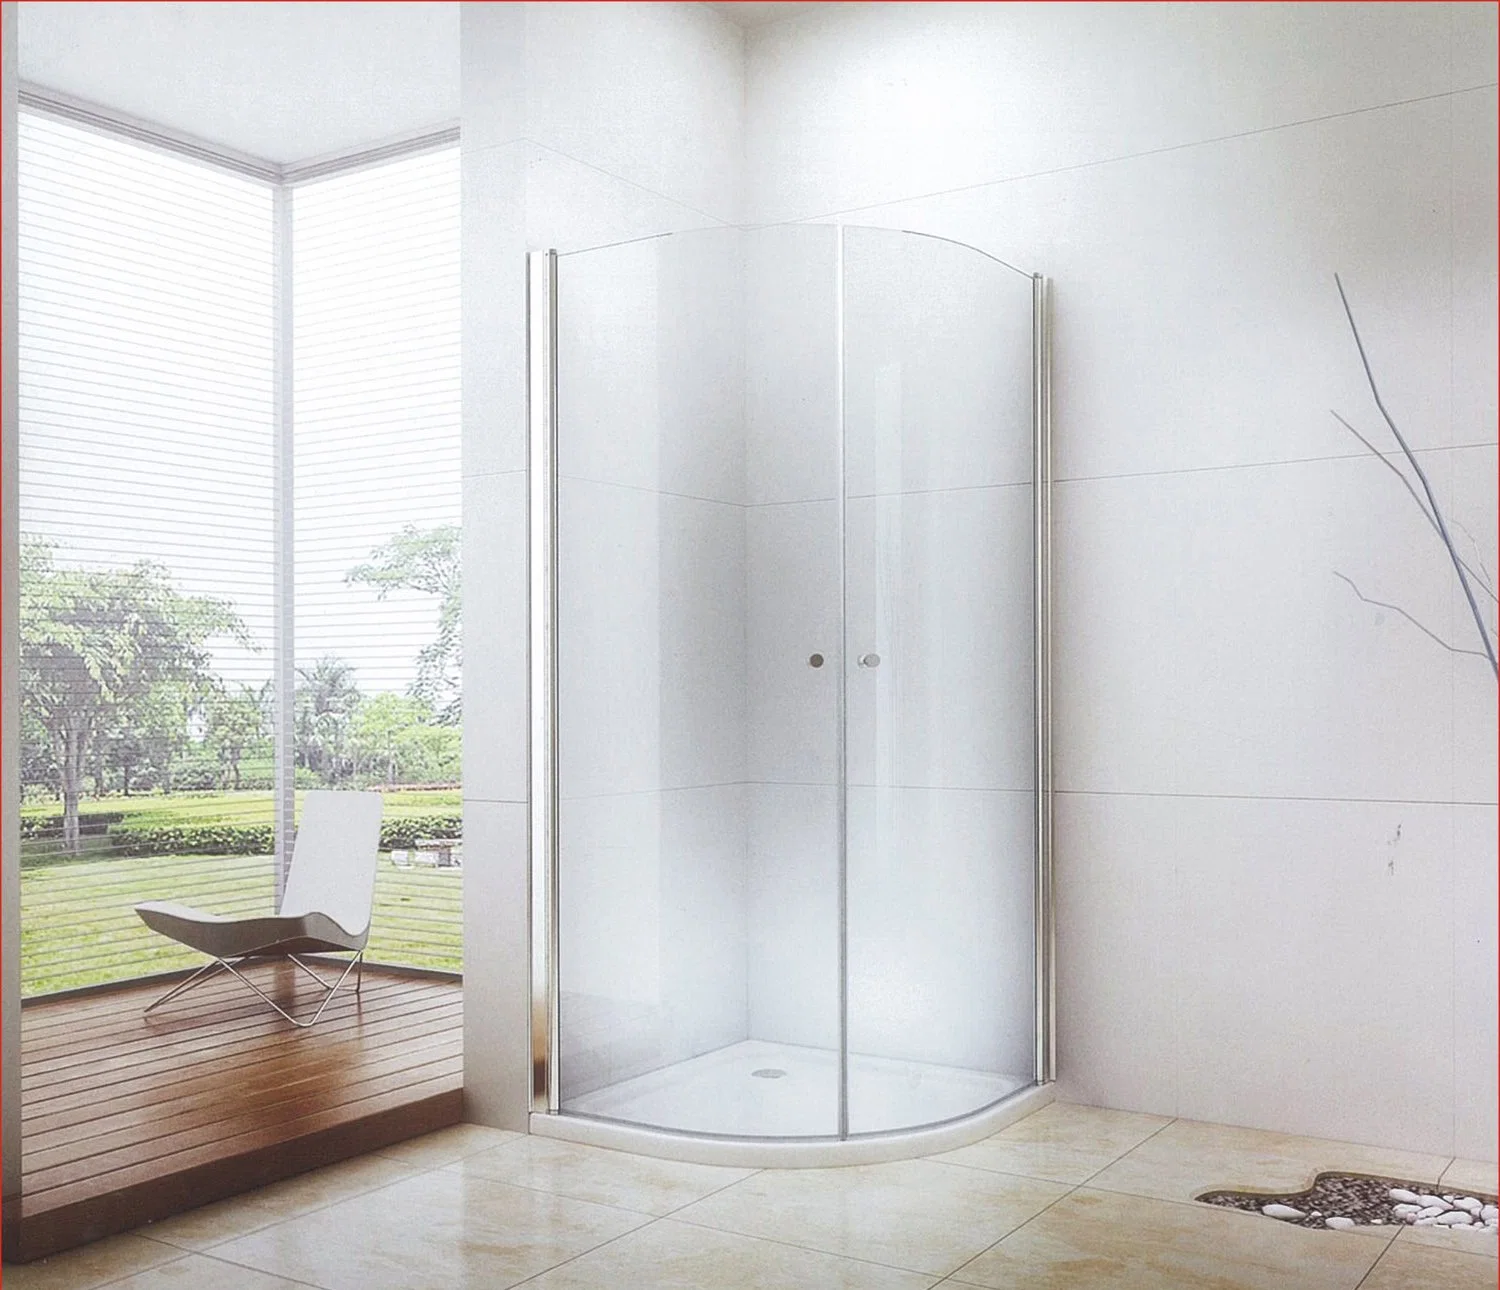 Moderno diseño de lujo ronda sin cerco simple baño Ducha con apertura de puertas corredizas de vidrio (CK-8016)